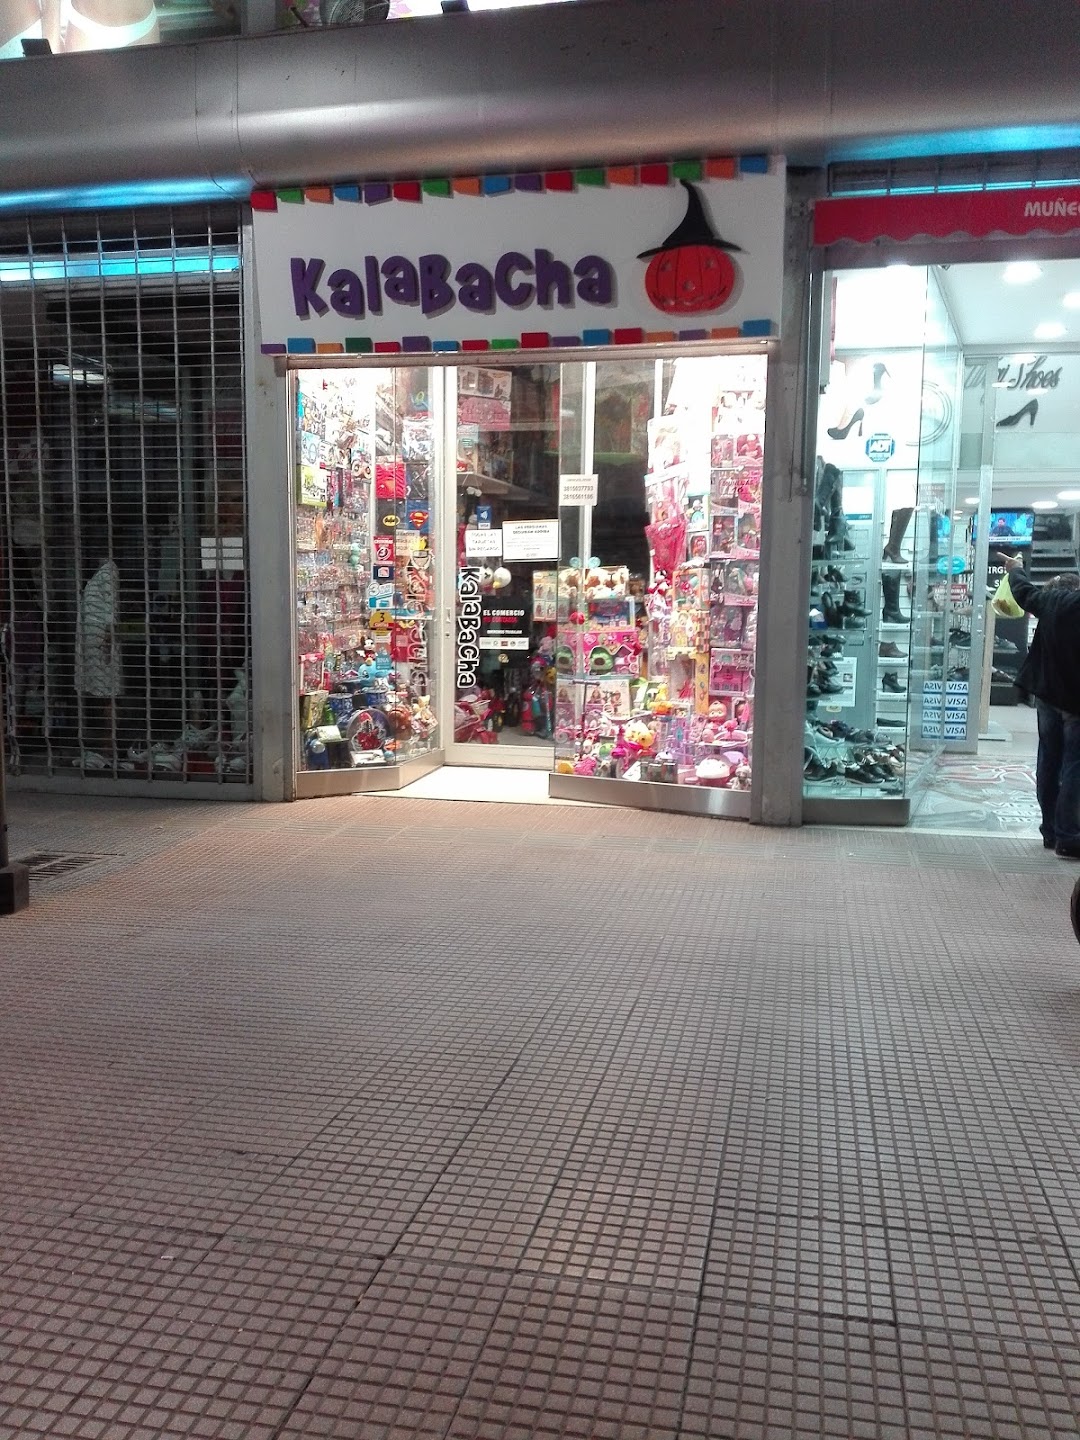 Kalabacha